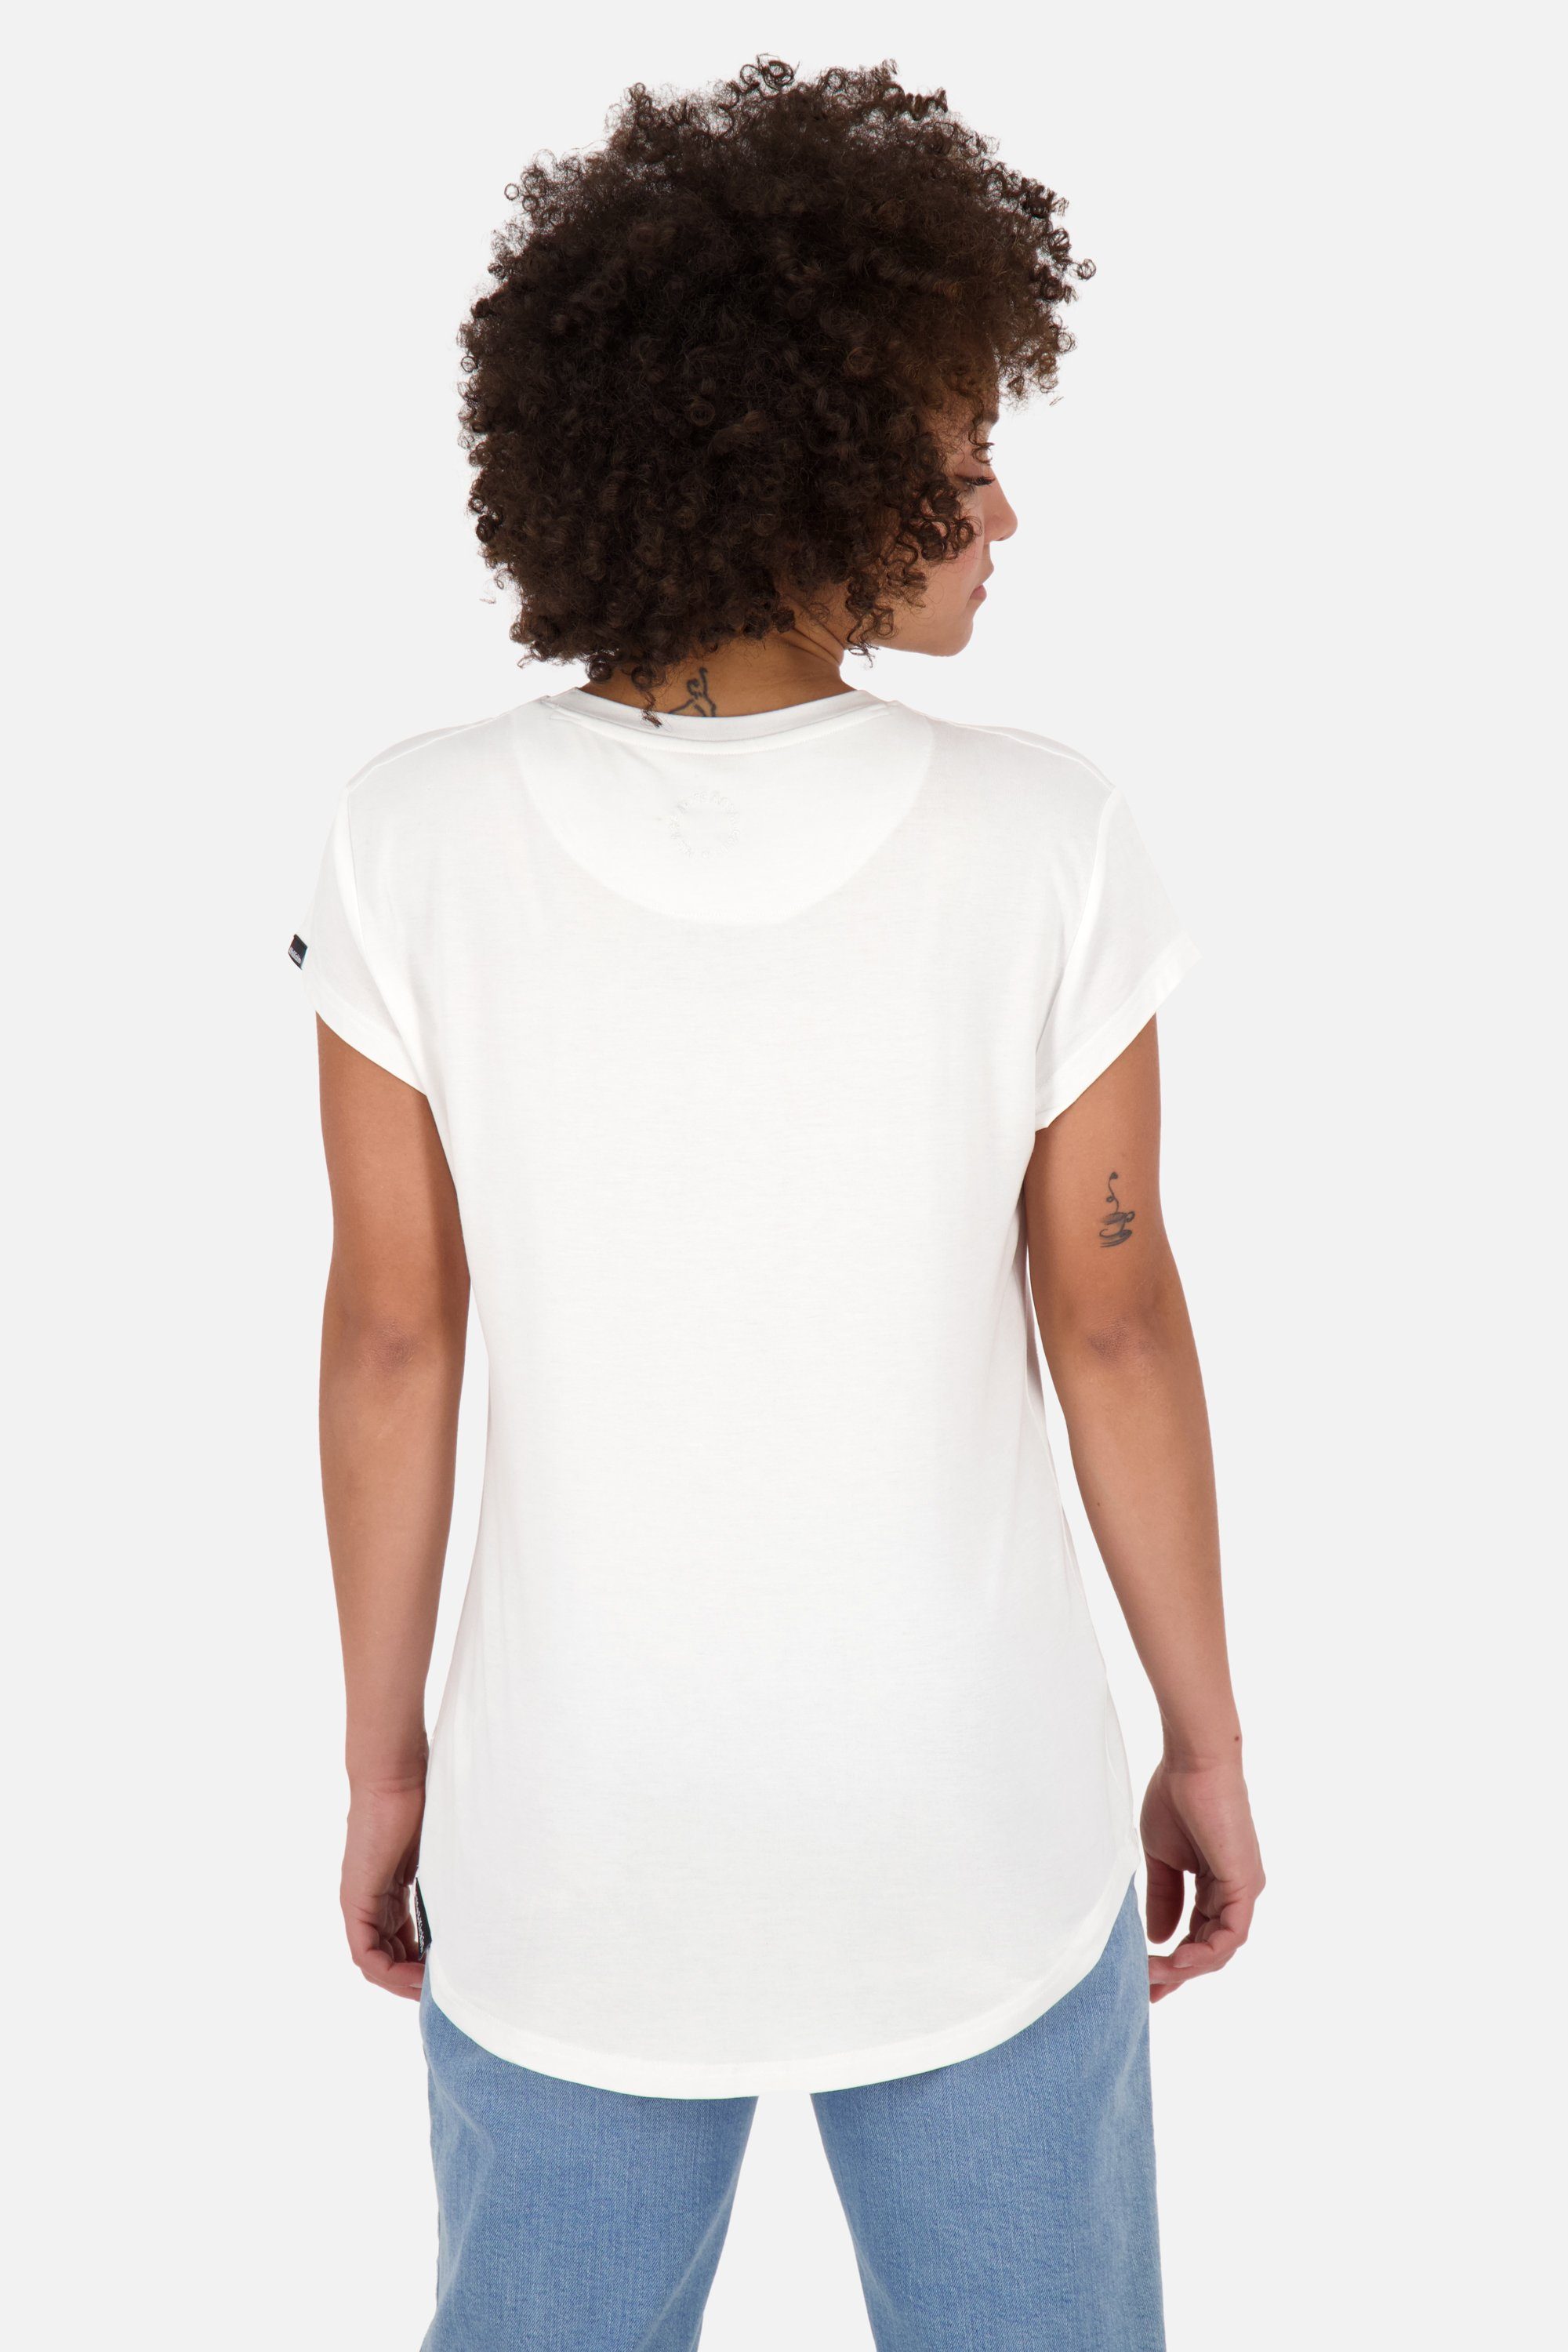 Alife A MimmyAK Shirt Shirt white Rundhalsshirt Damen & Kurzarmshirt, Kickin